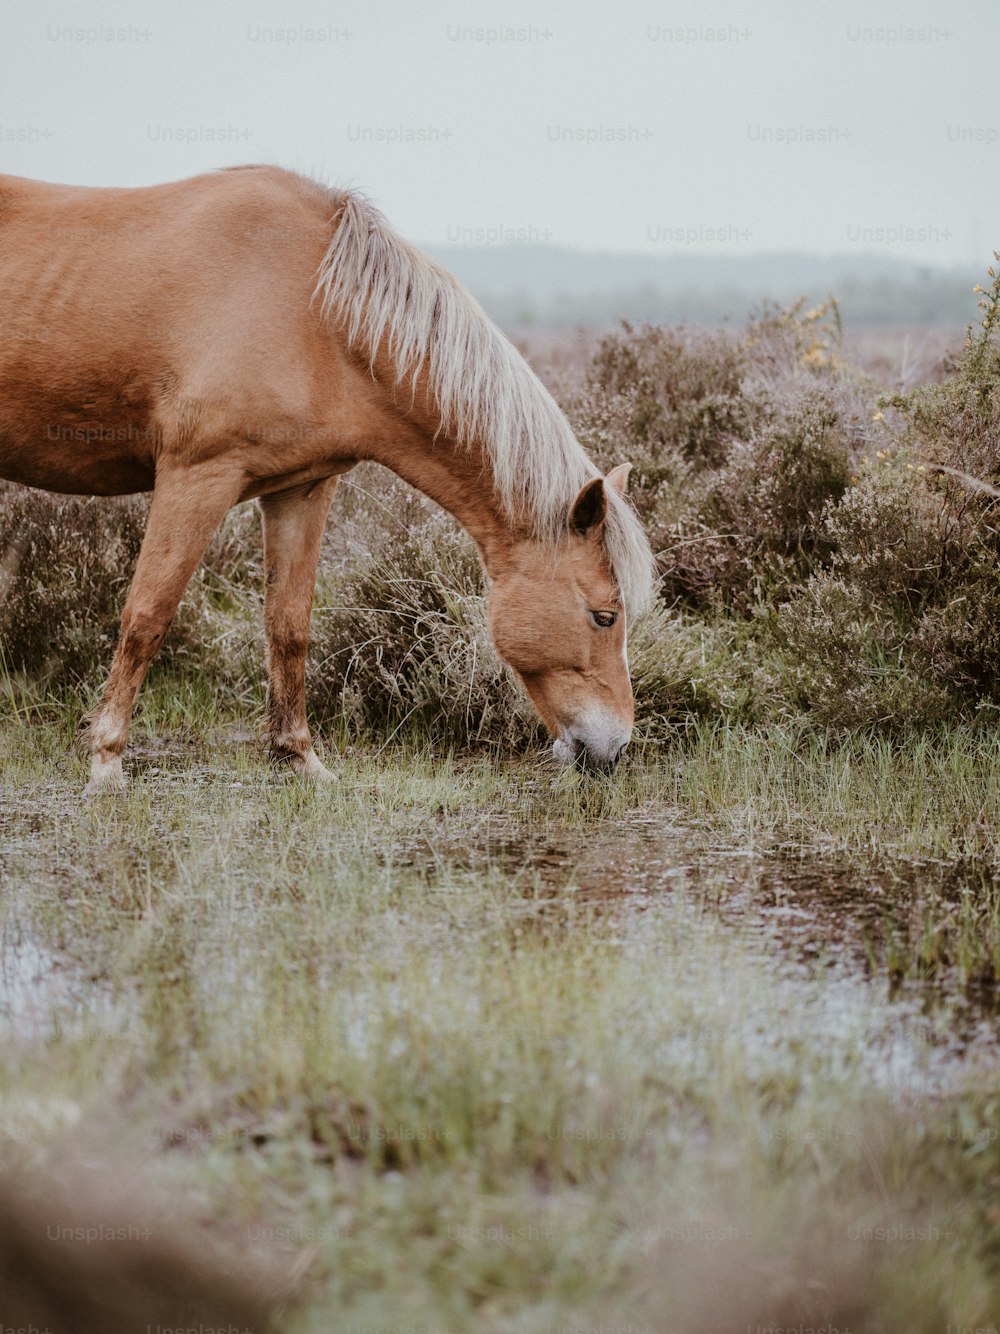 Un caballo marrón comiendo hierba en un campo